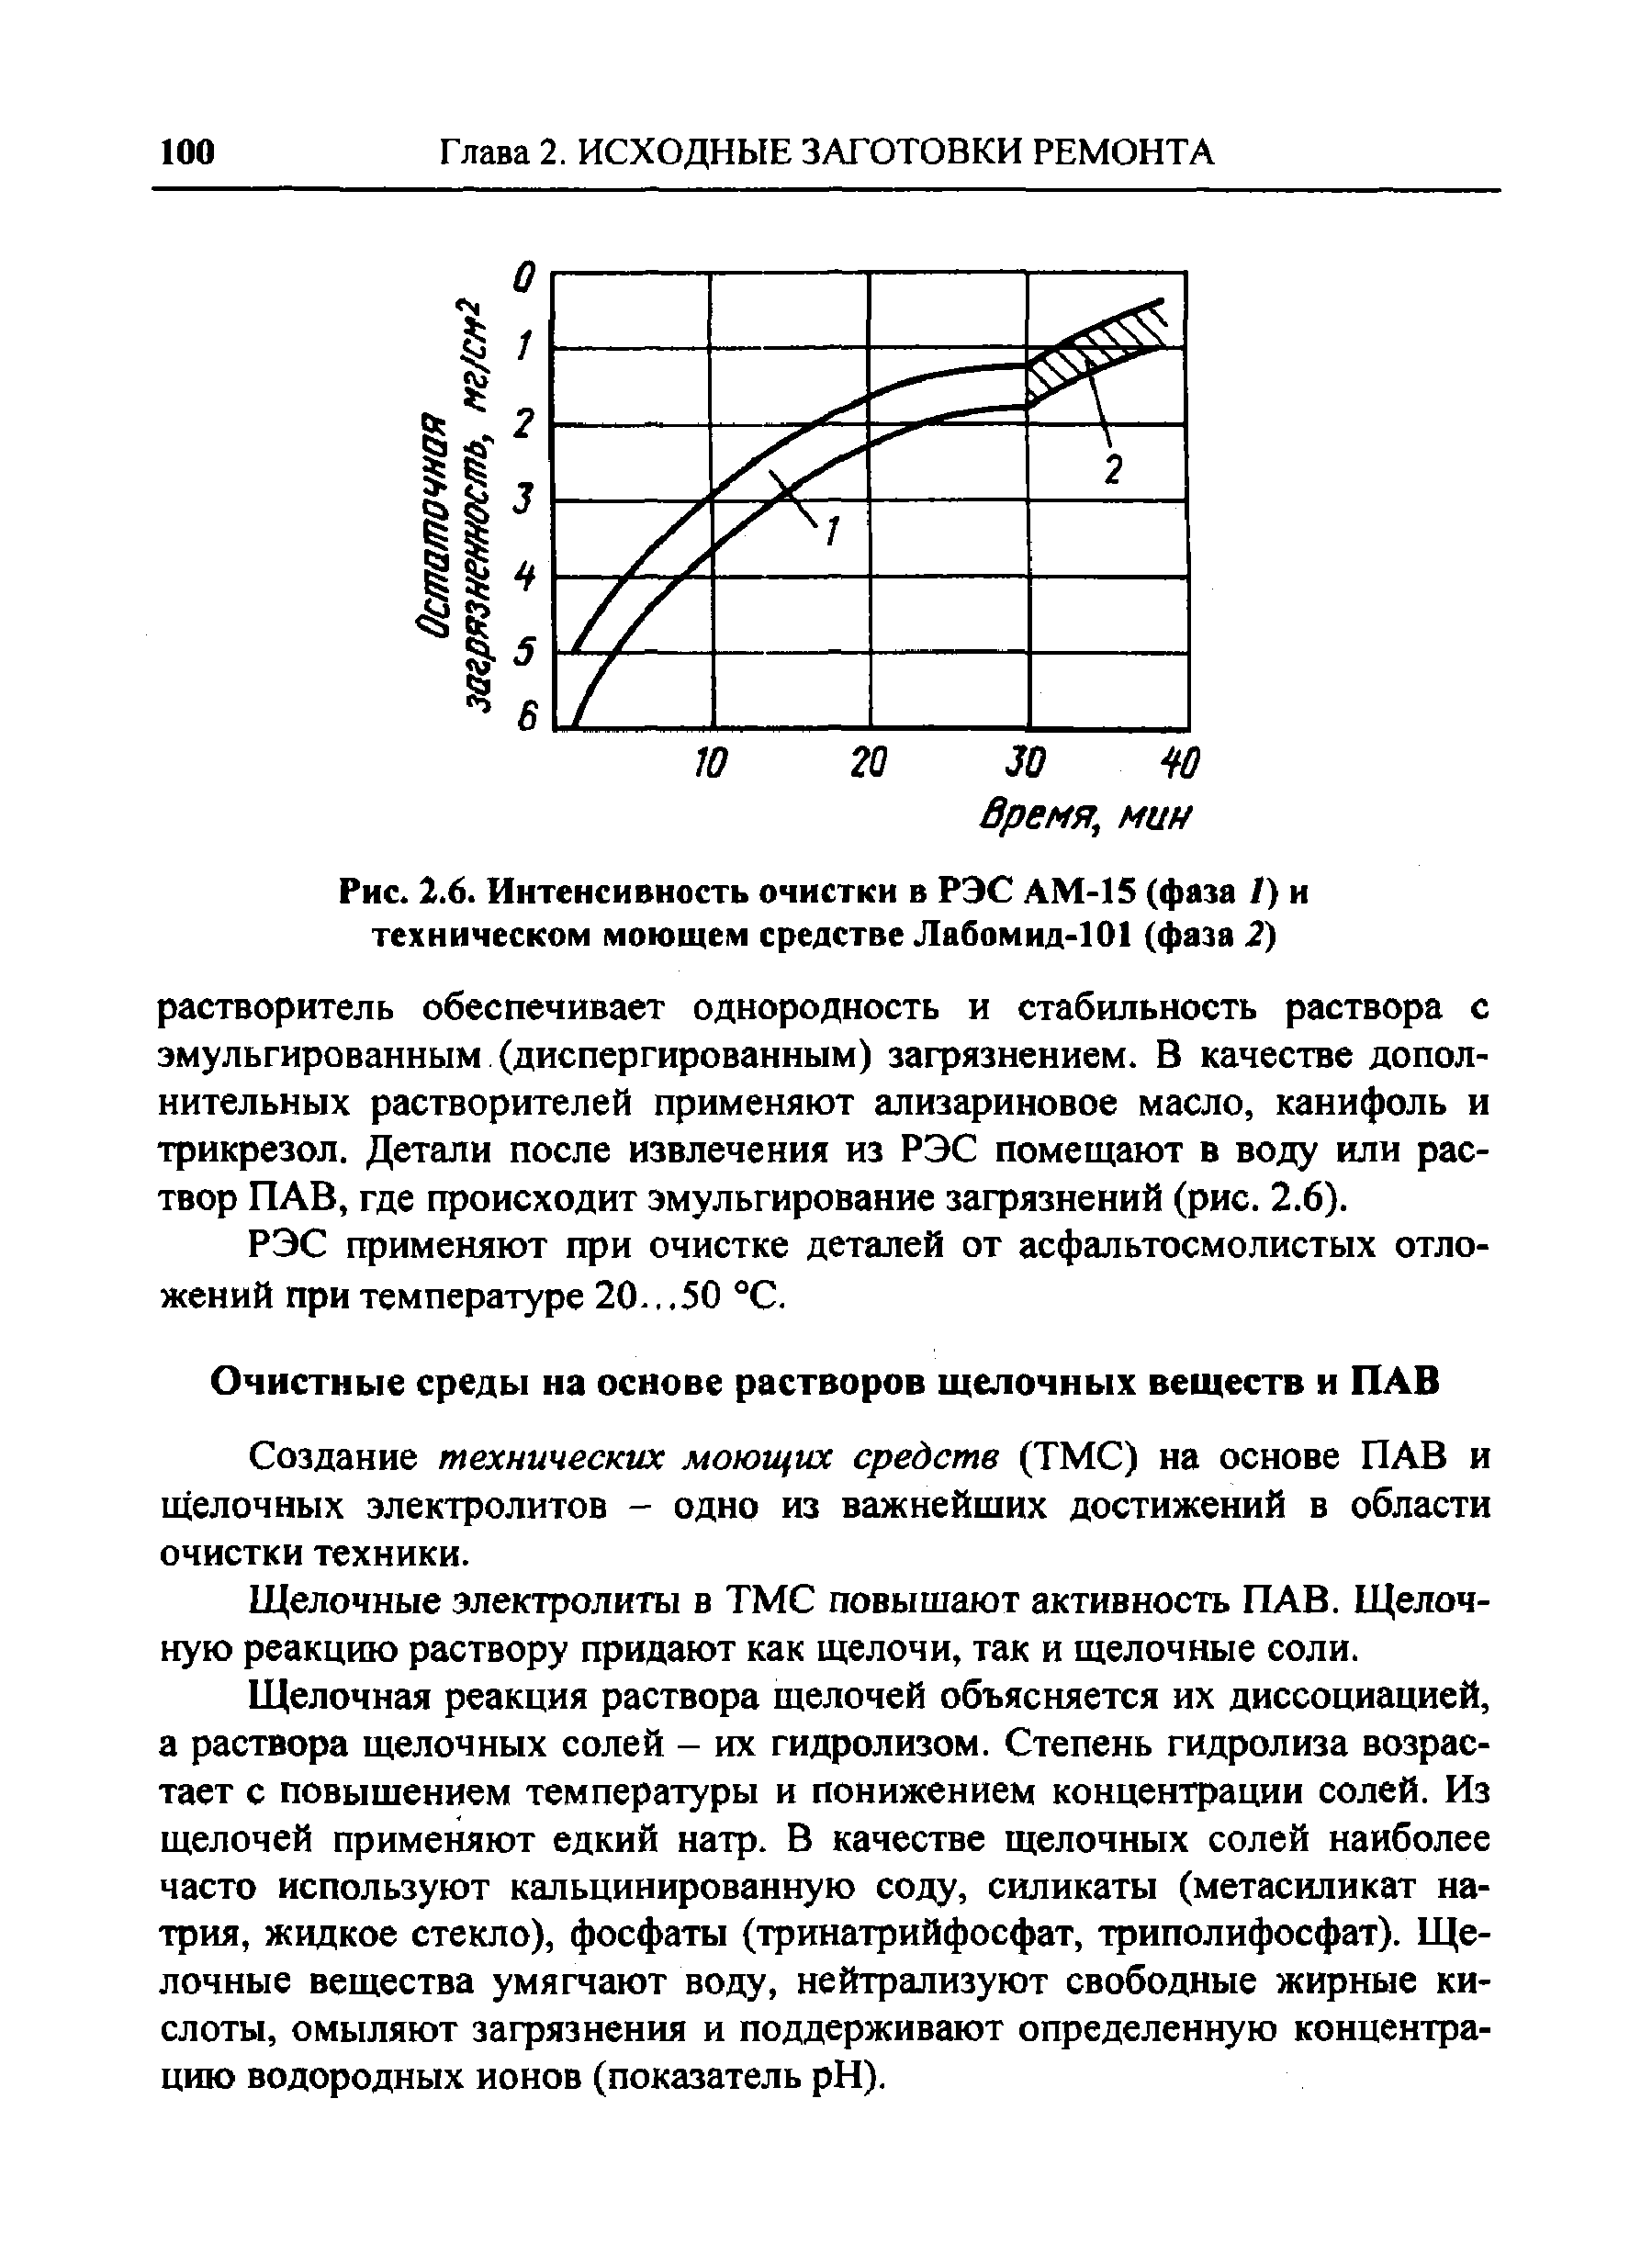 Рис. 2.6. Интенсивность очистки в РЭС АМ-15 (фаза /) и техническом моющем средстве Лабомид-101 (фаза 2)
